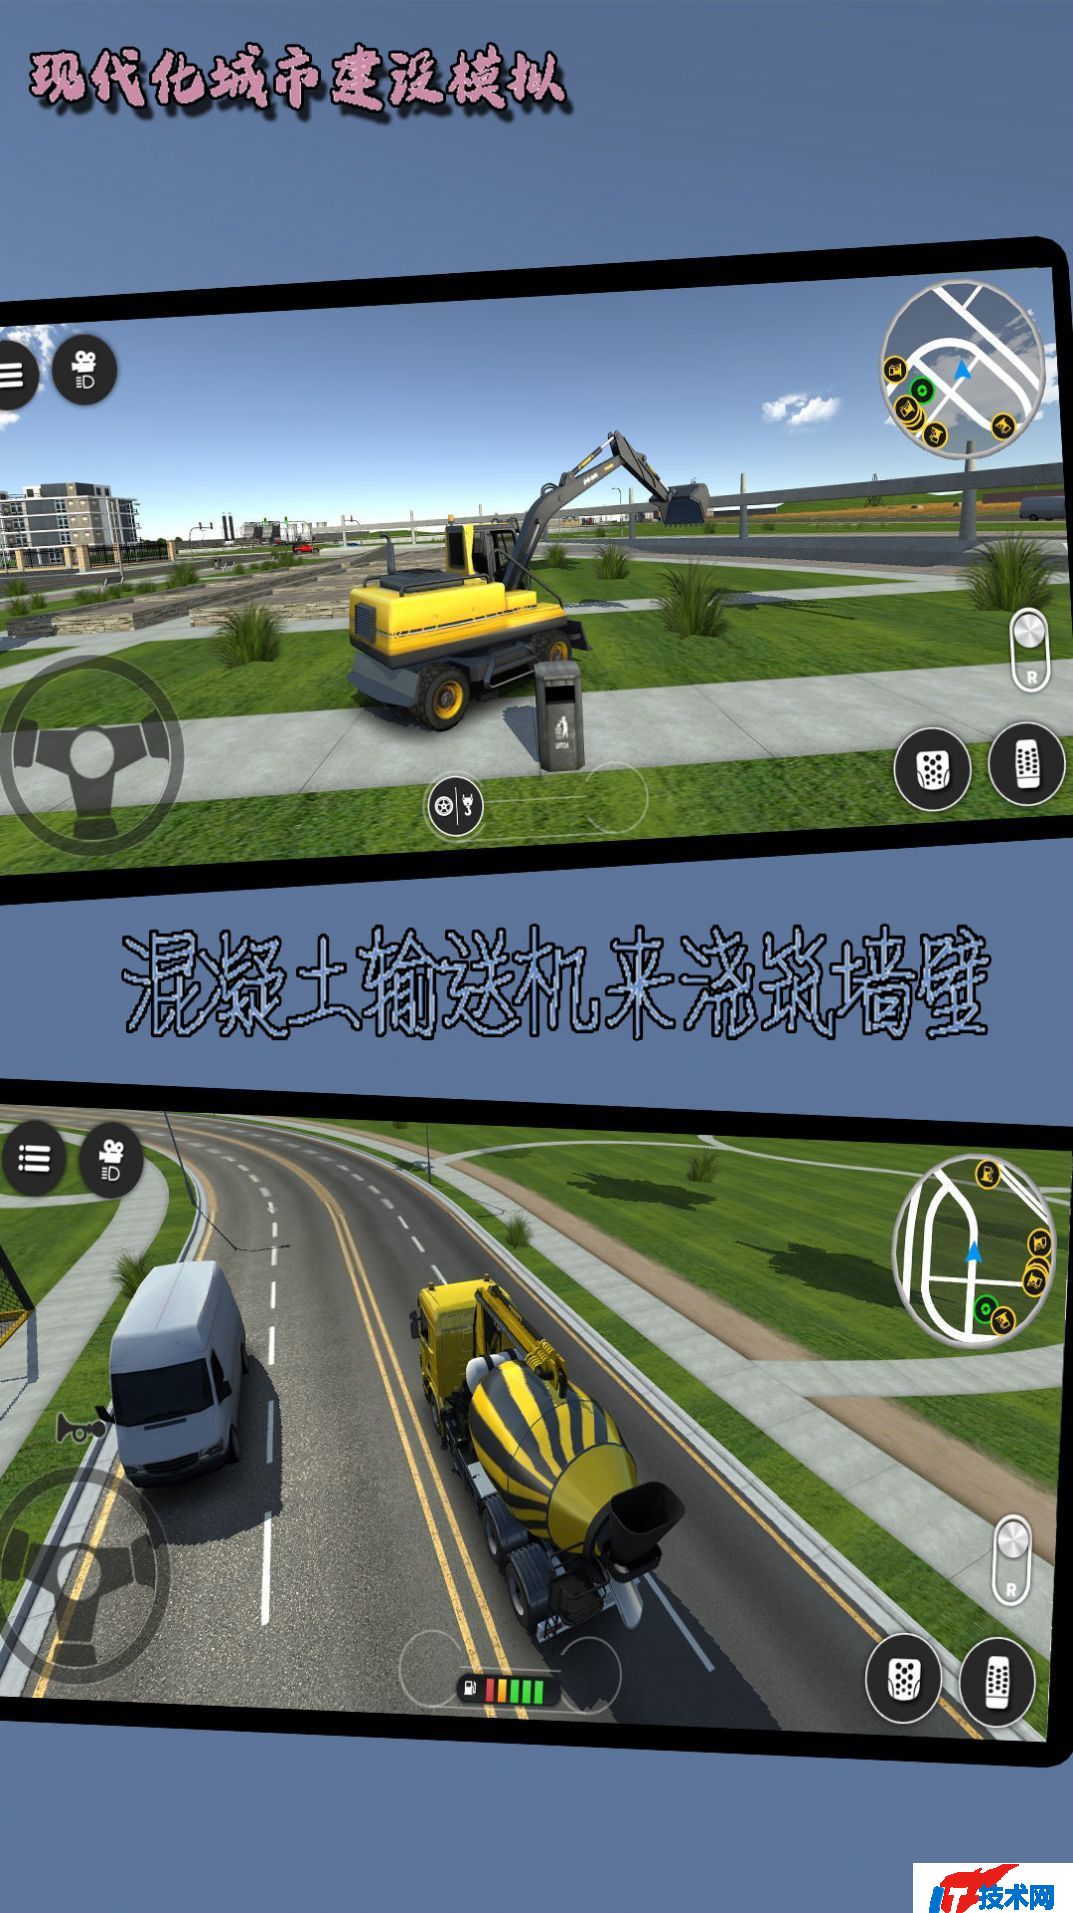 现代化城市建设模拟游戏